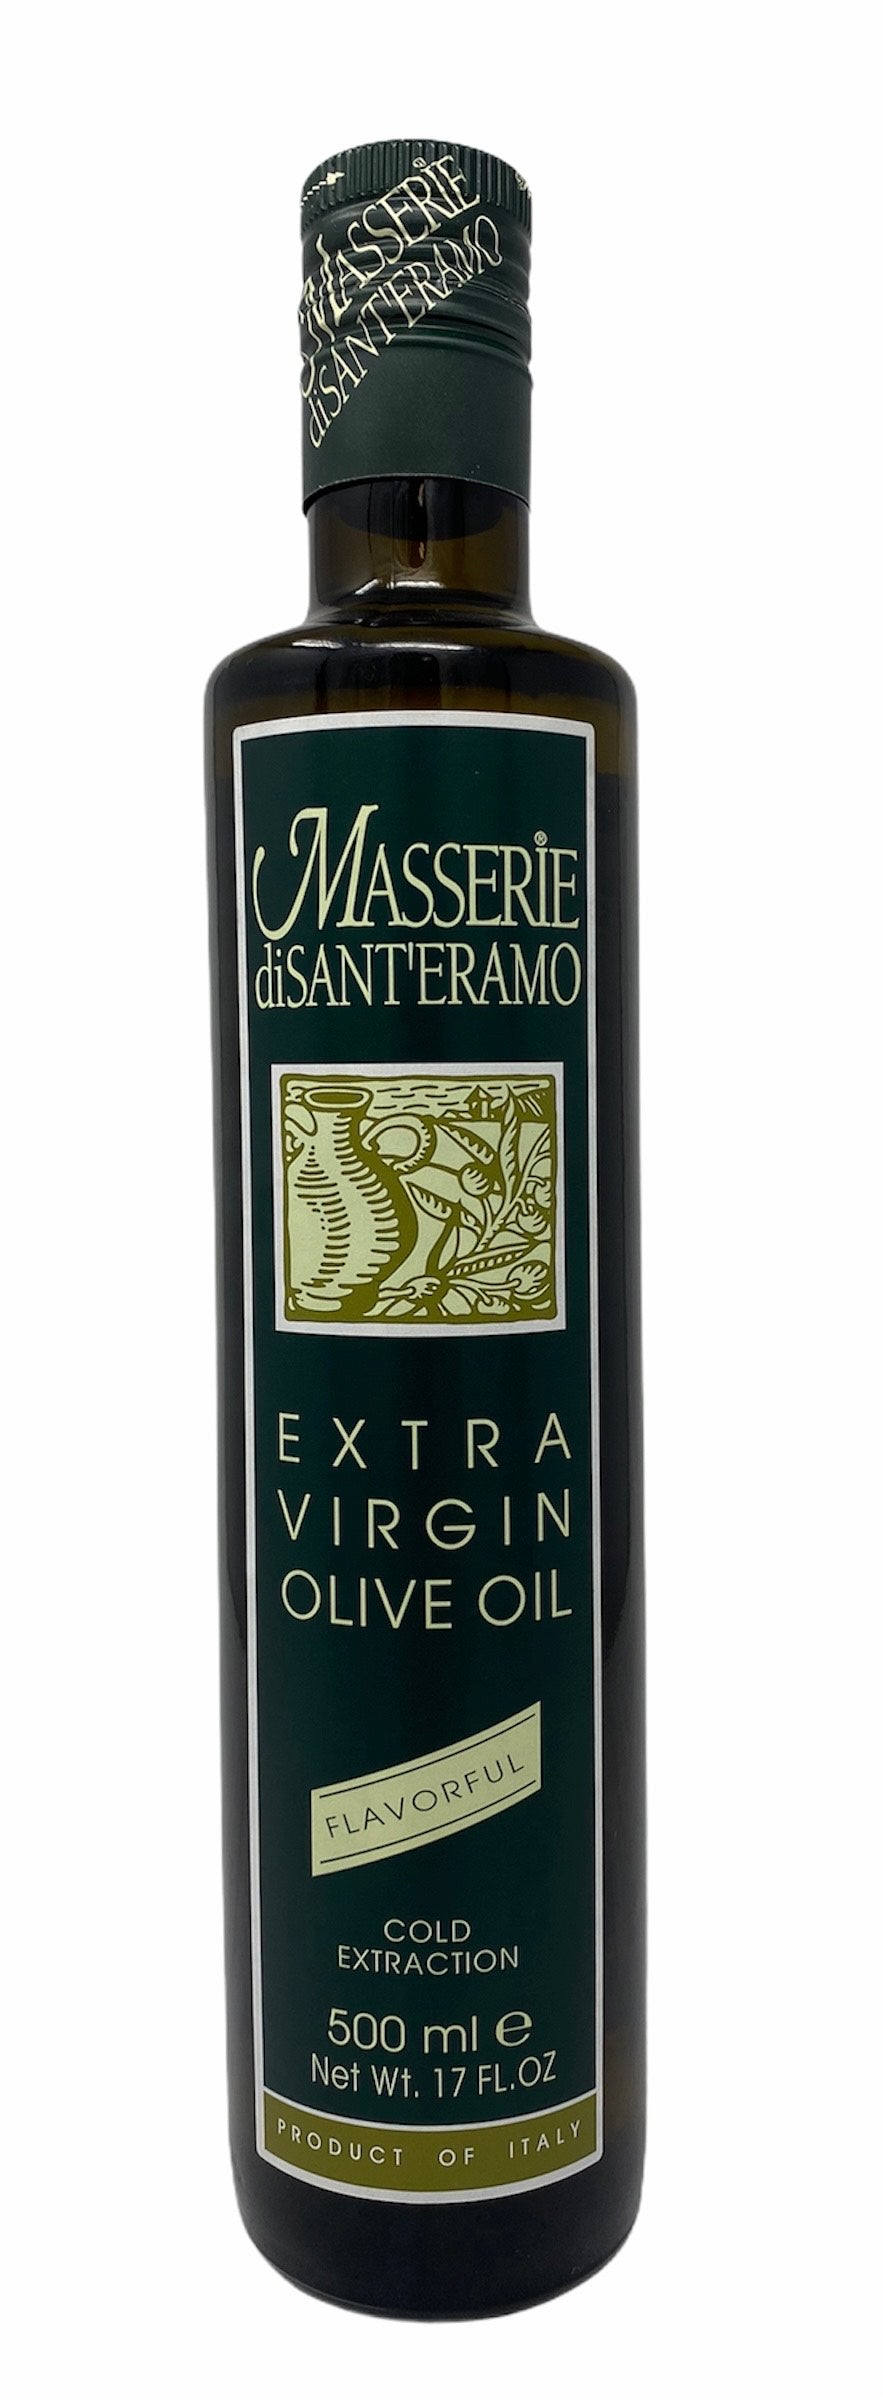 Masserie Green Olive Oil 500ml